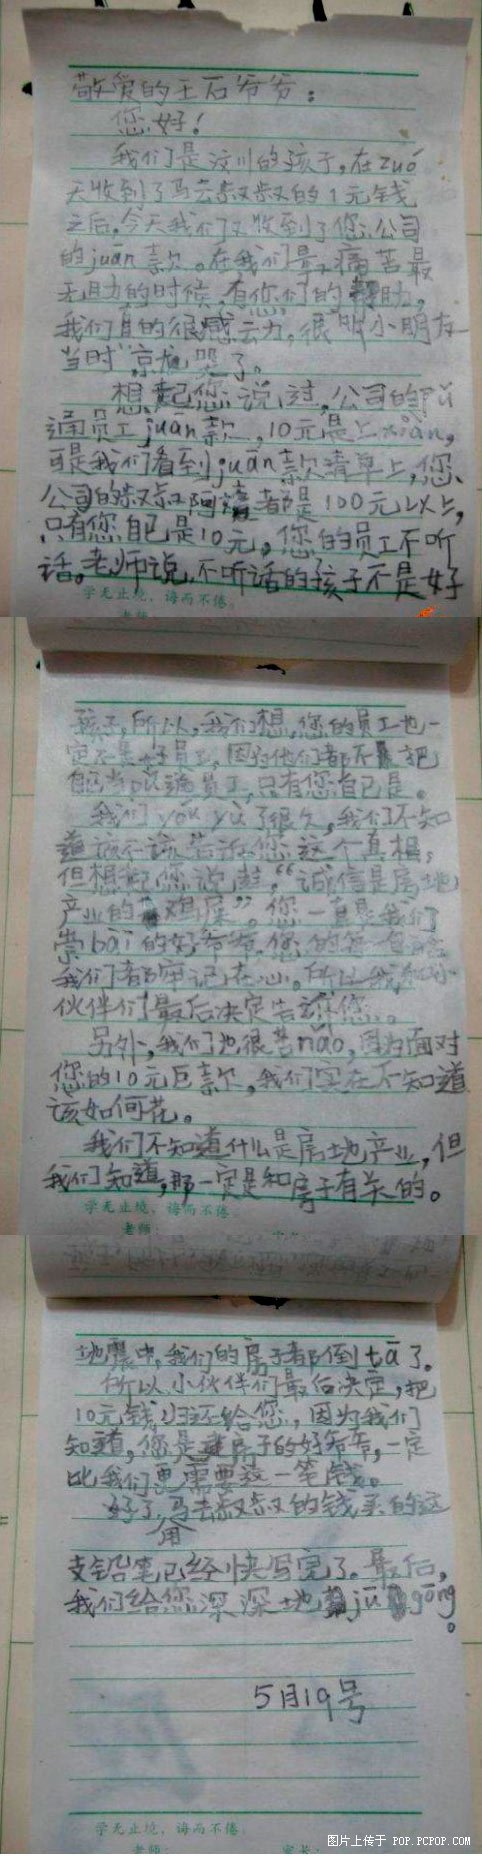 汶川小朋友给王石写的信.JPG